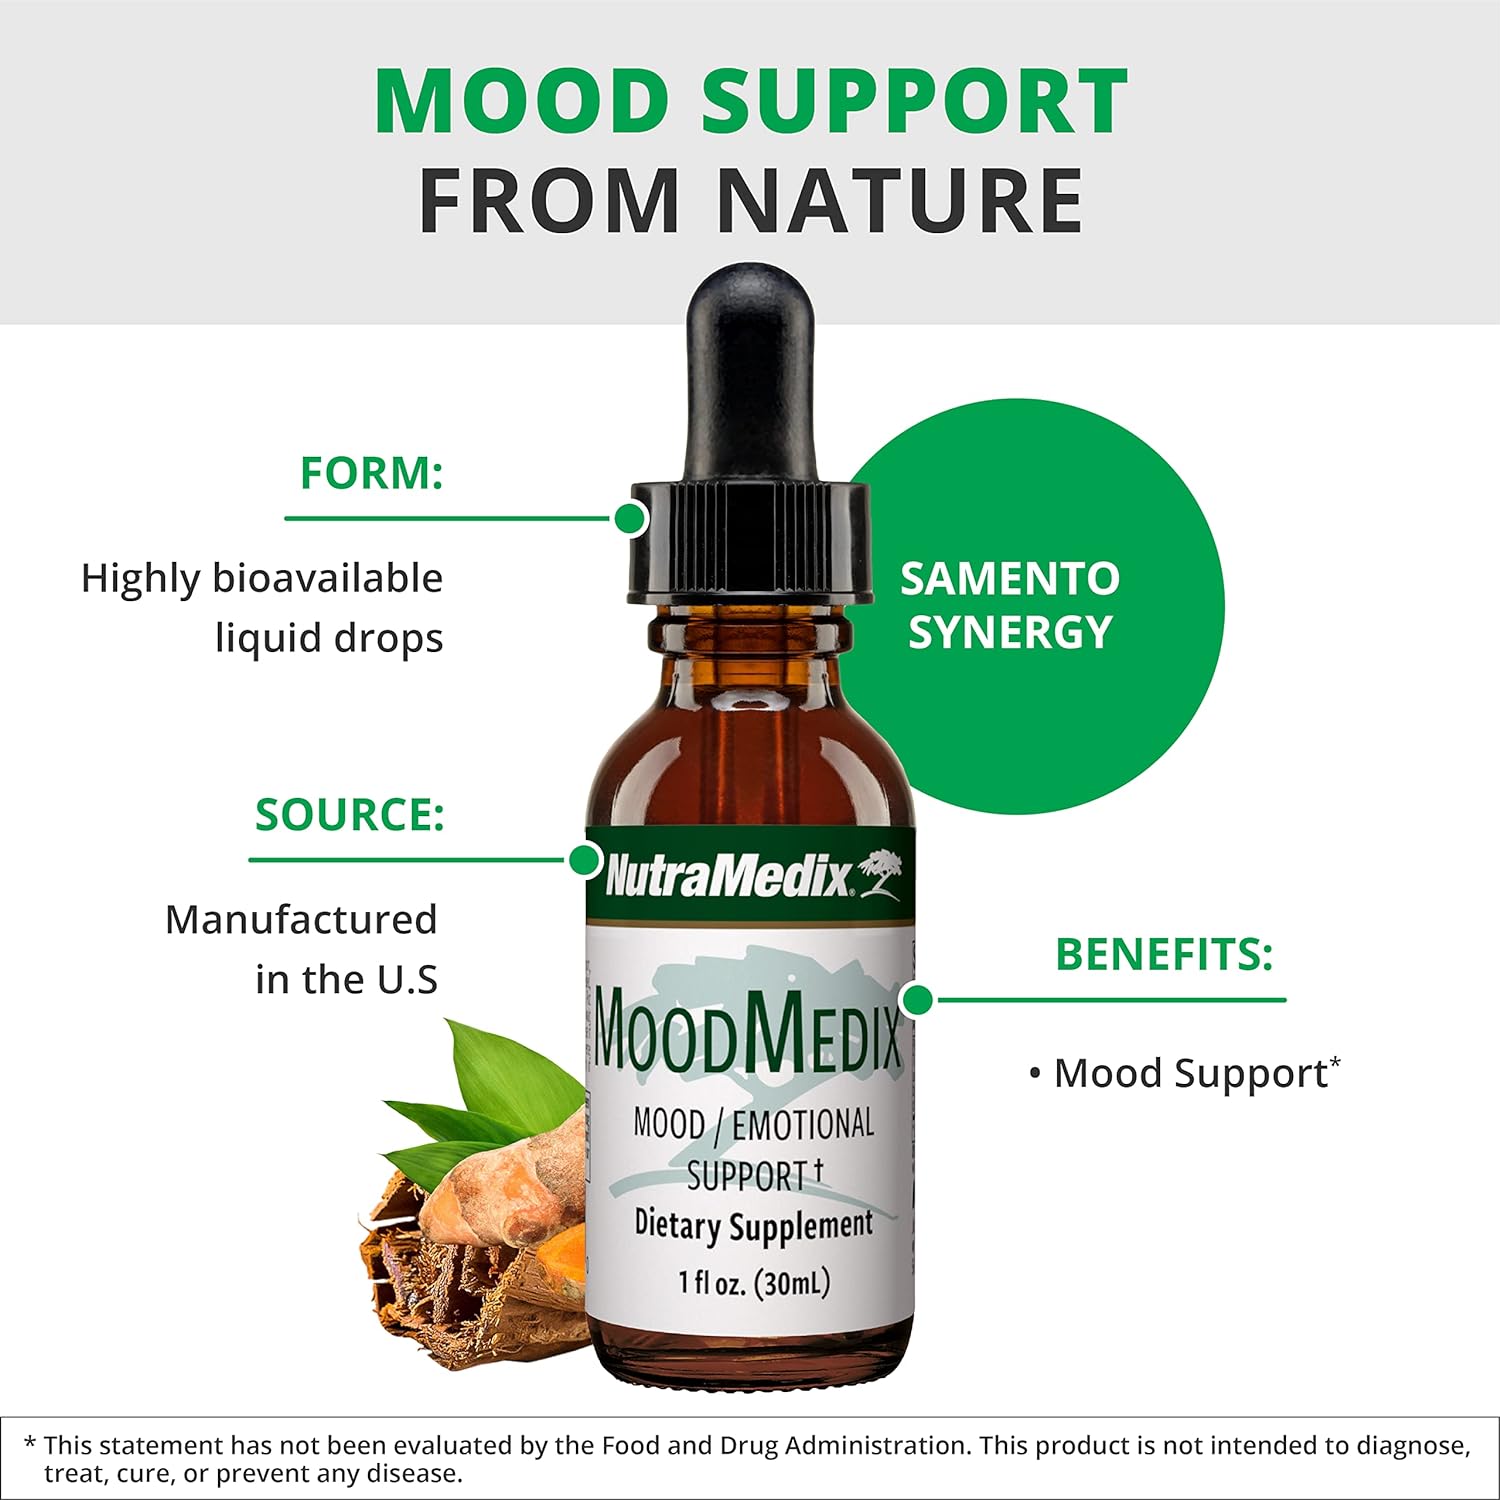 NutraMedix MoodMedix - Mood Support Supplement with Bioavailable Liqui